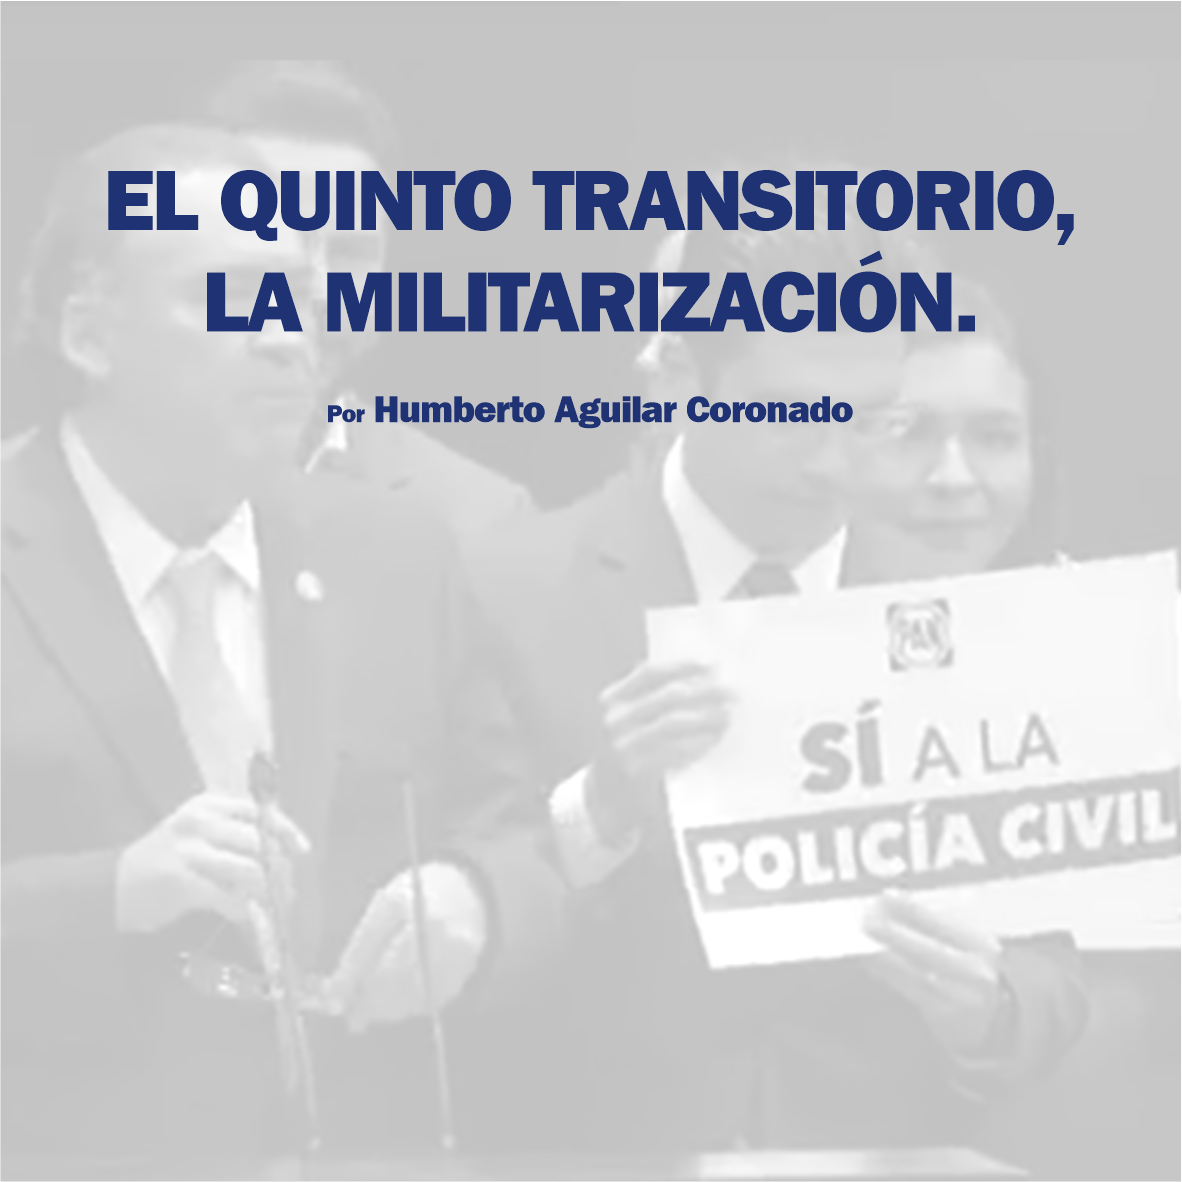 EL QUINTO TRANSITORIO, LA MILITARIZACIÓN.